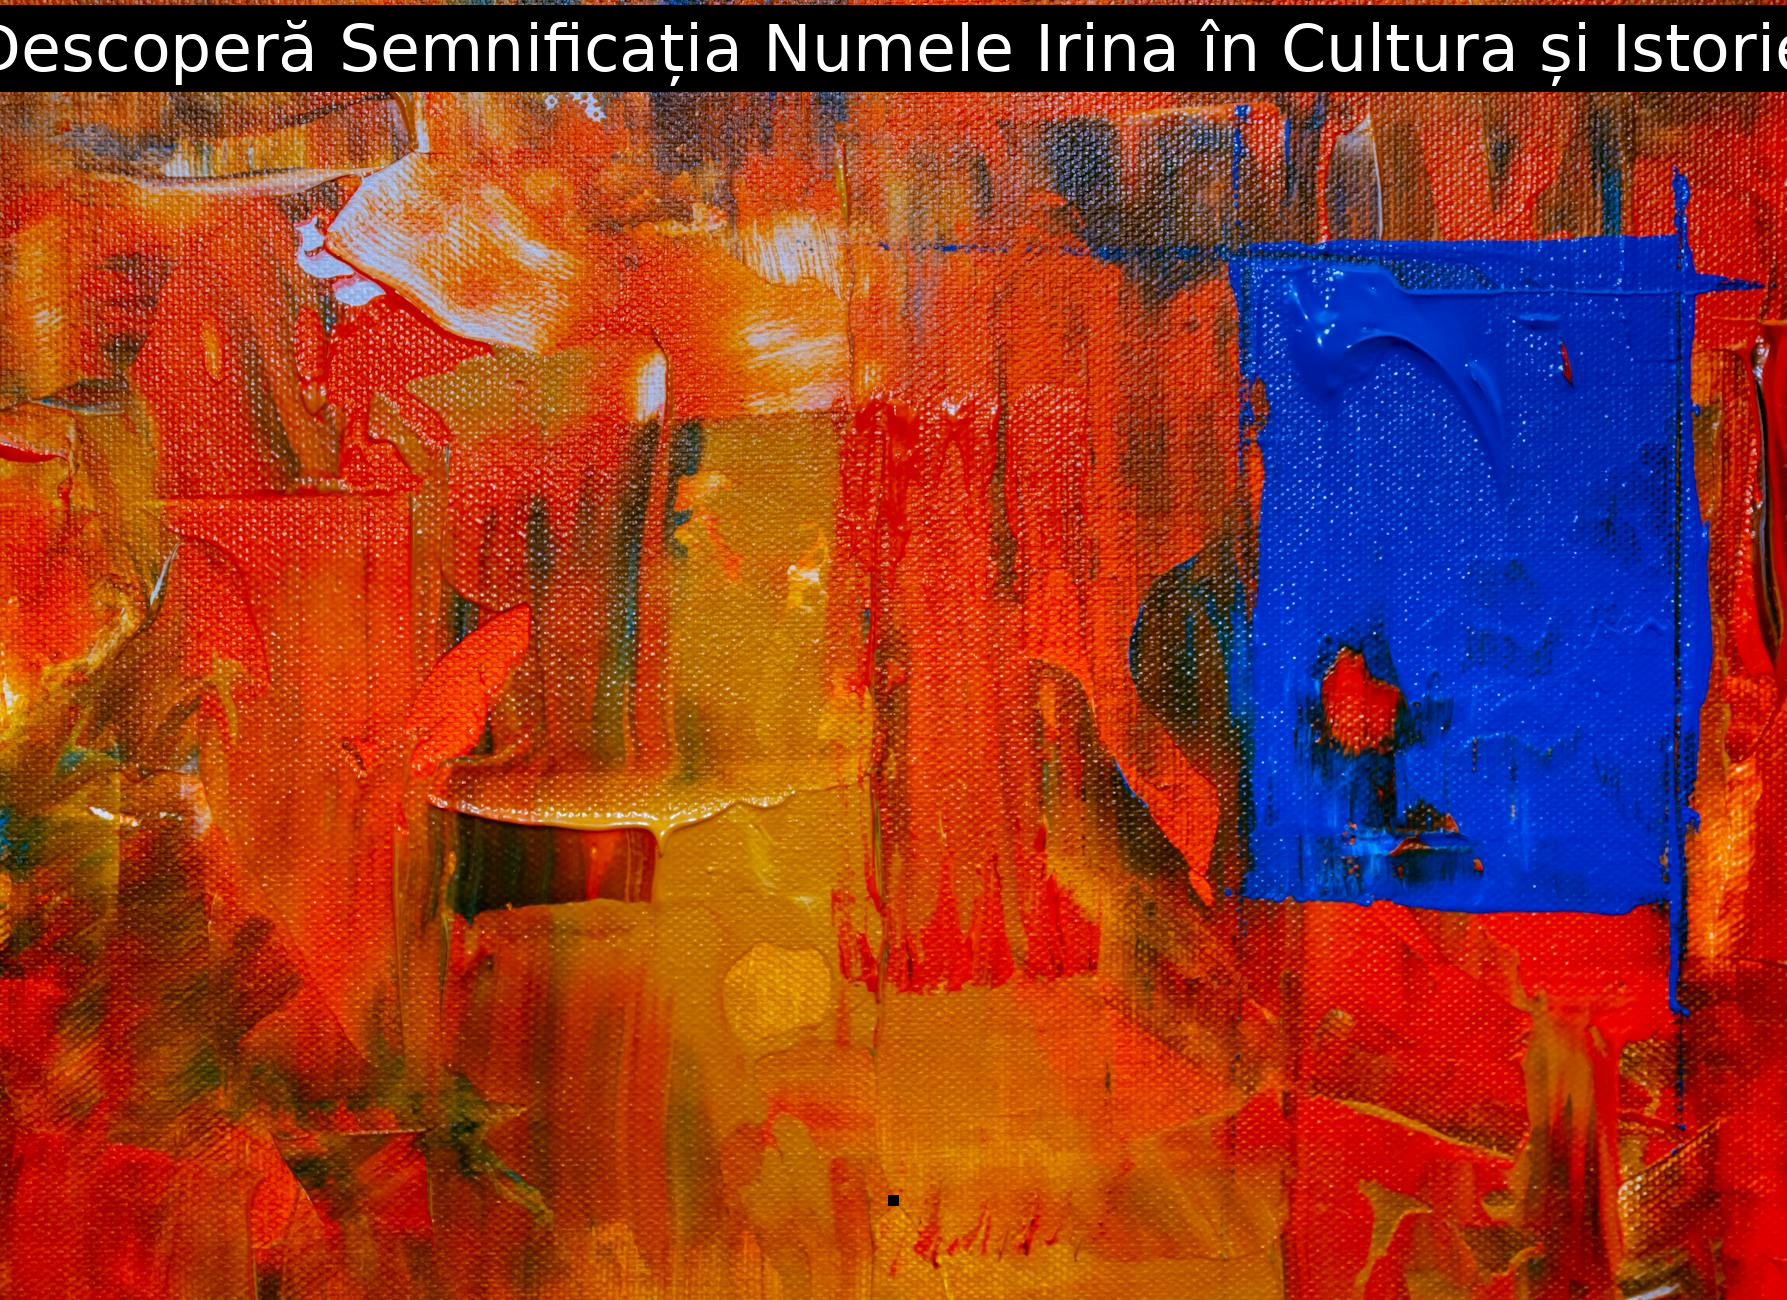 Descoperă Semnificația Numele Irina în Cultura și Istorie